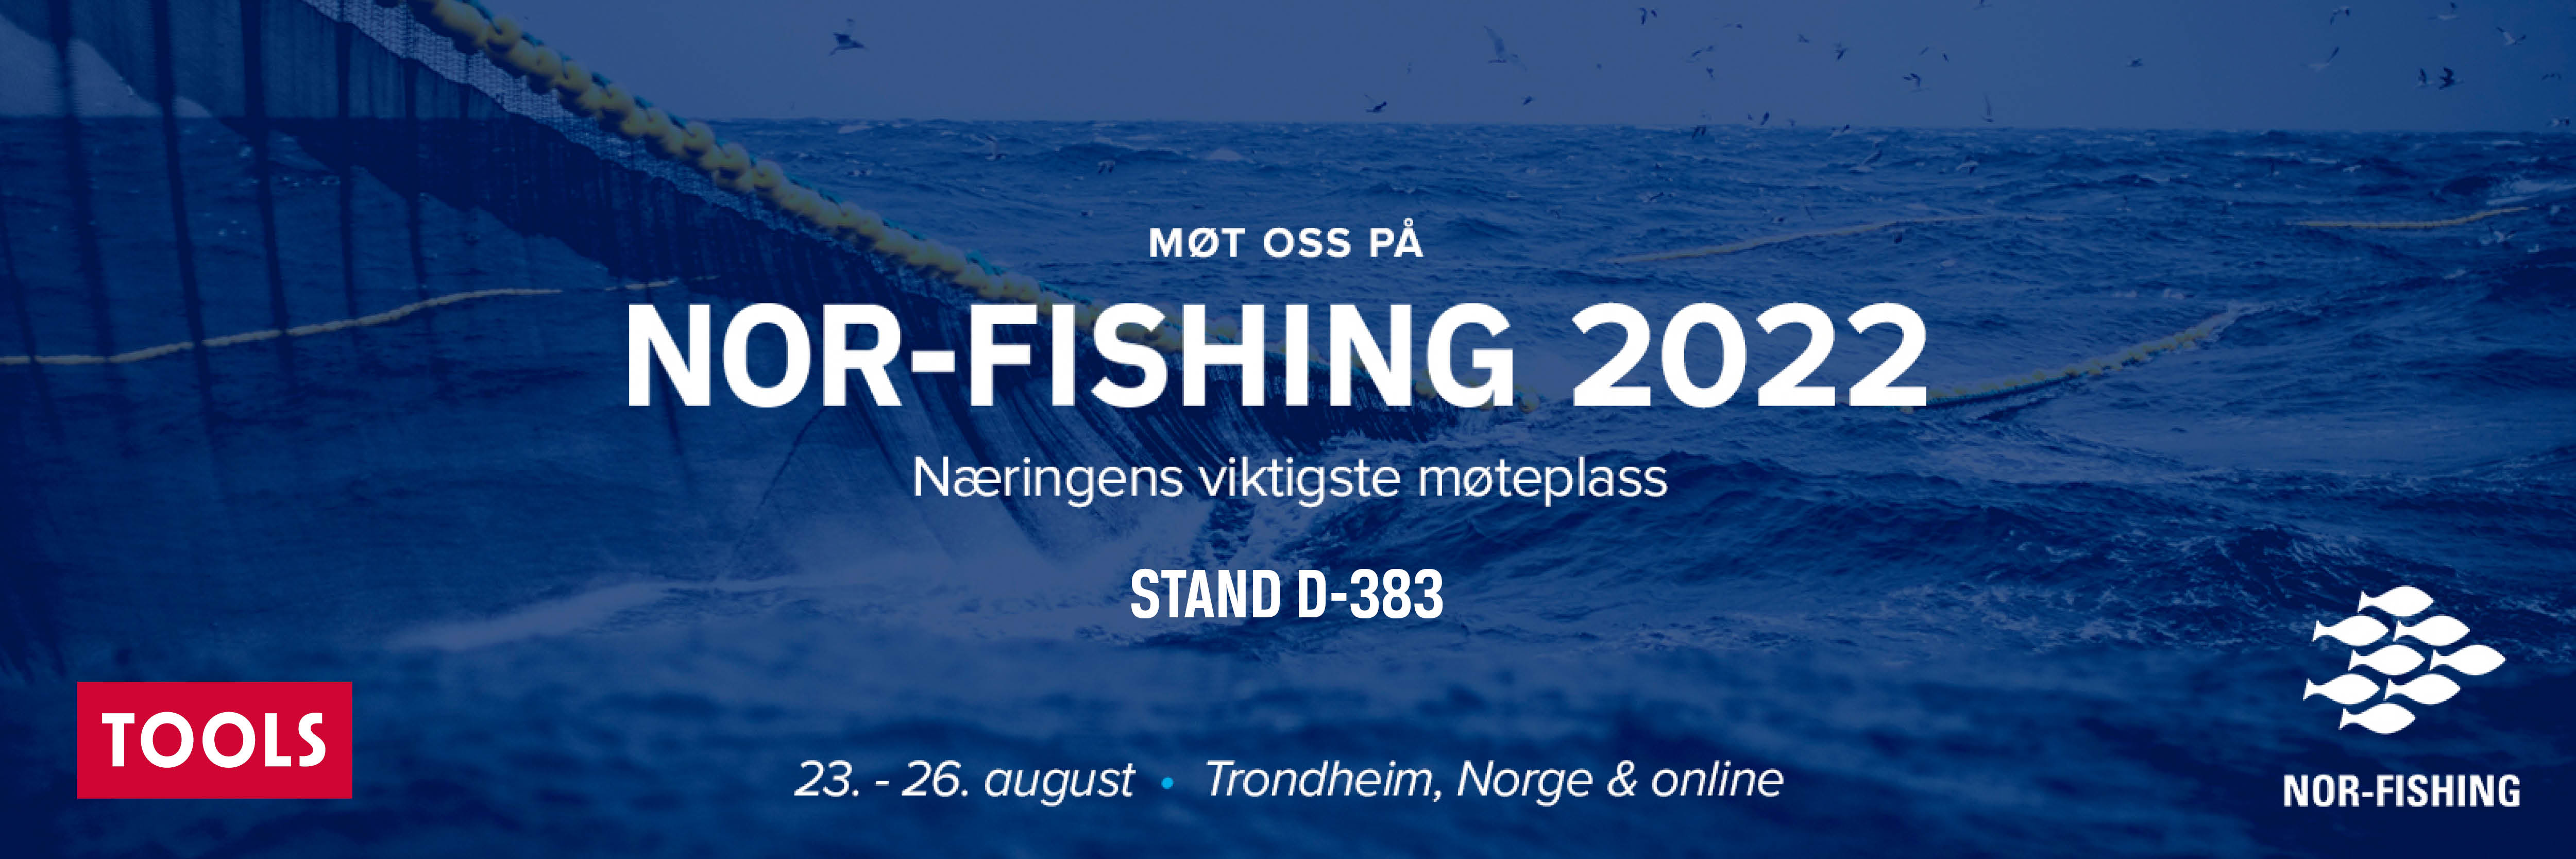 Banner Nor-Fishing 2022 for web.jpg